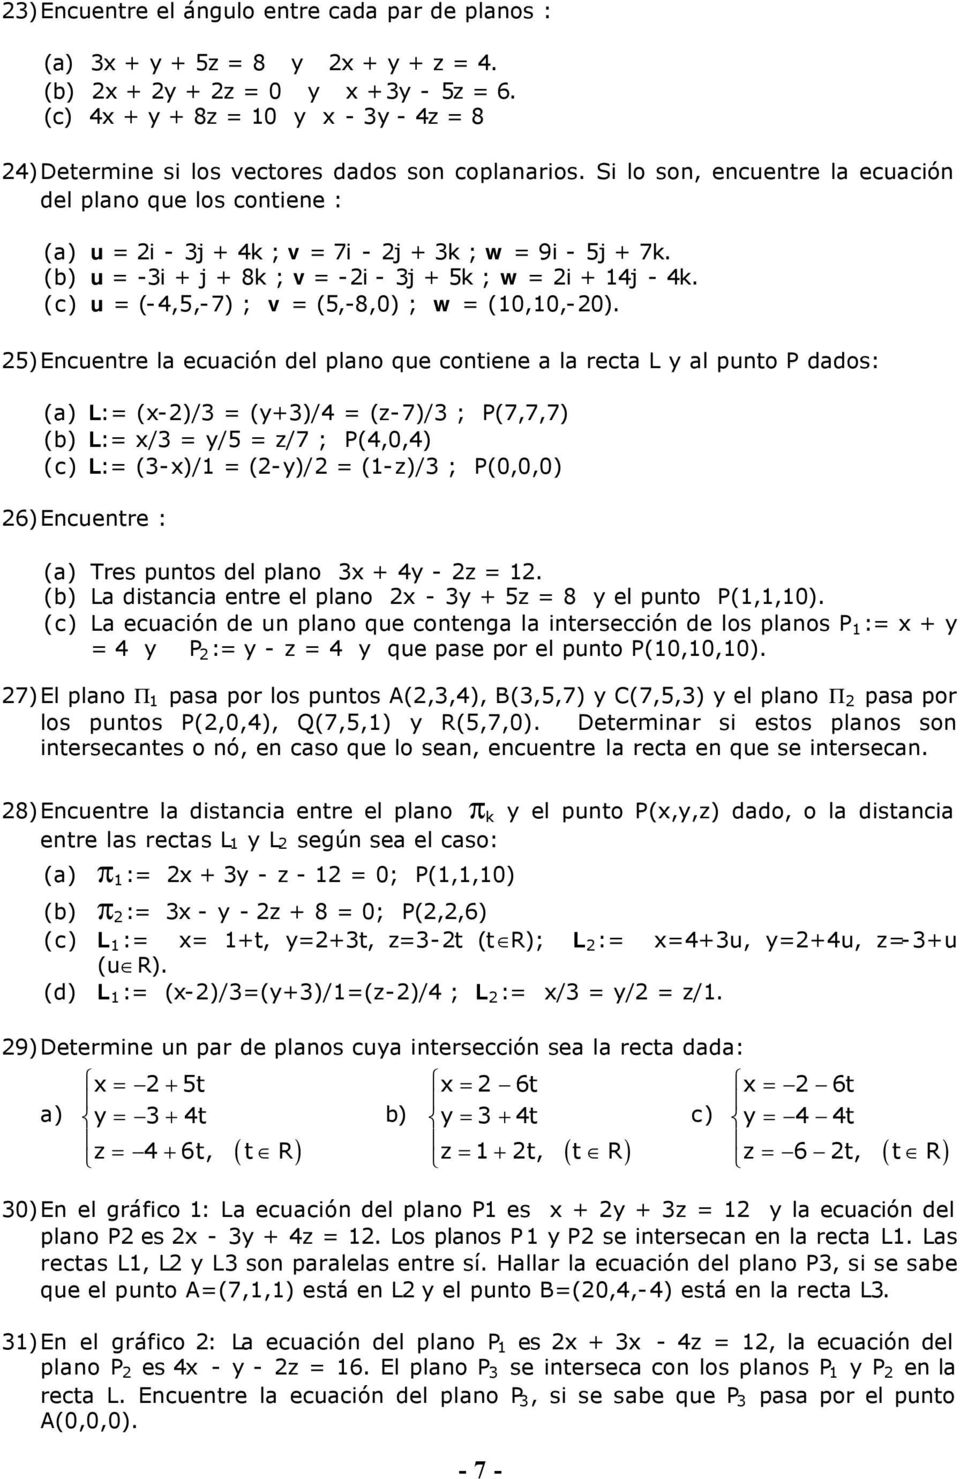 Si lo son, encuentre la ecuación del plano que los contiene : (a) u = 2i - 3j + 4k ; v = 7i - 2j + 3k ; w = 9i - 5j + 7k. (b) u = -3i + j + 8k ; v = -2i - 3j + 5k ; w = 2i + 4j - 4k.